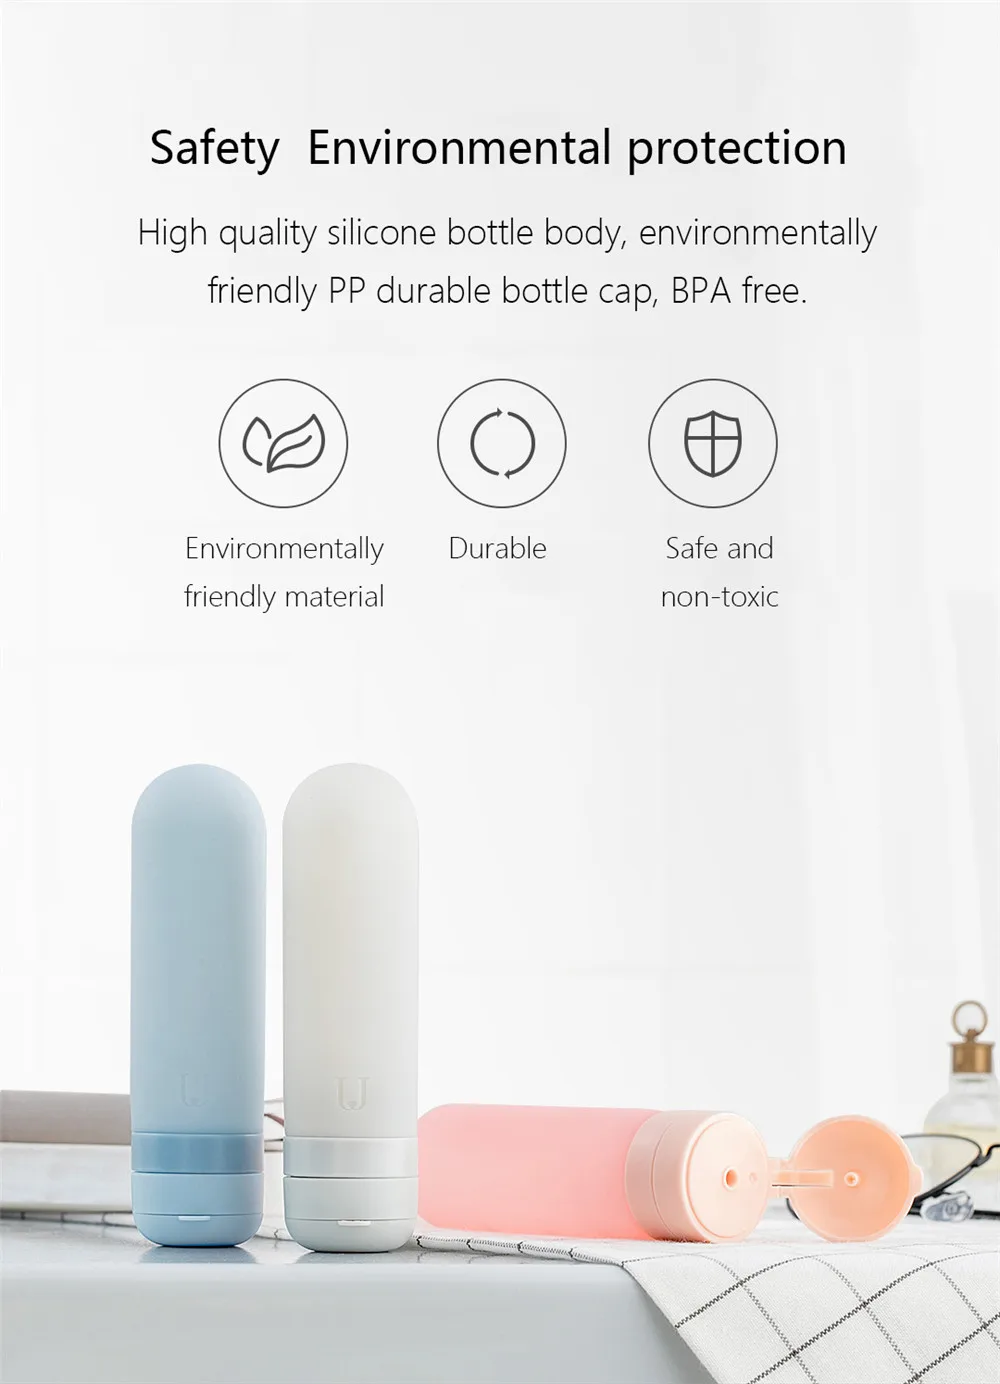 3 шт./компл. Xiaomi Jordan и яркая детская одежда с рисунком персонажей Джуди силиконовая бутылка комплект Портативный легкая приятная на ощупь полезный, безопасный 50 мл/шт. для Семья дорожная сумка